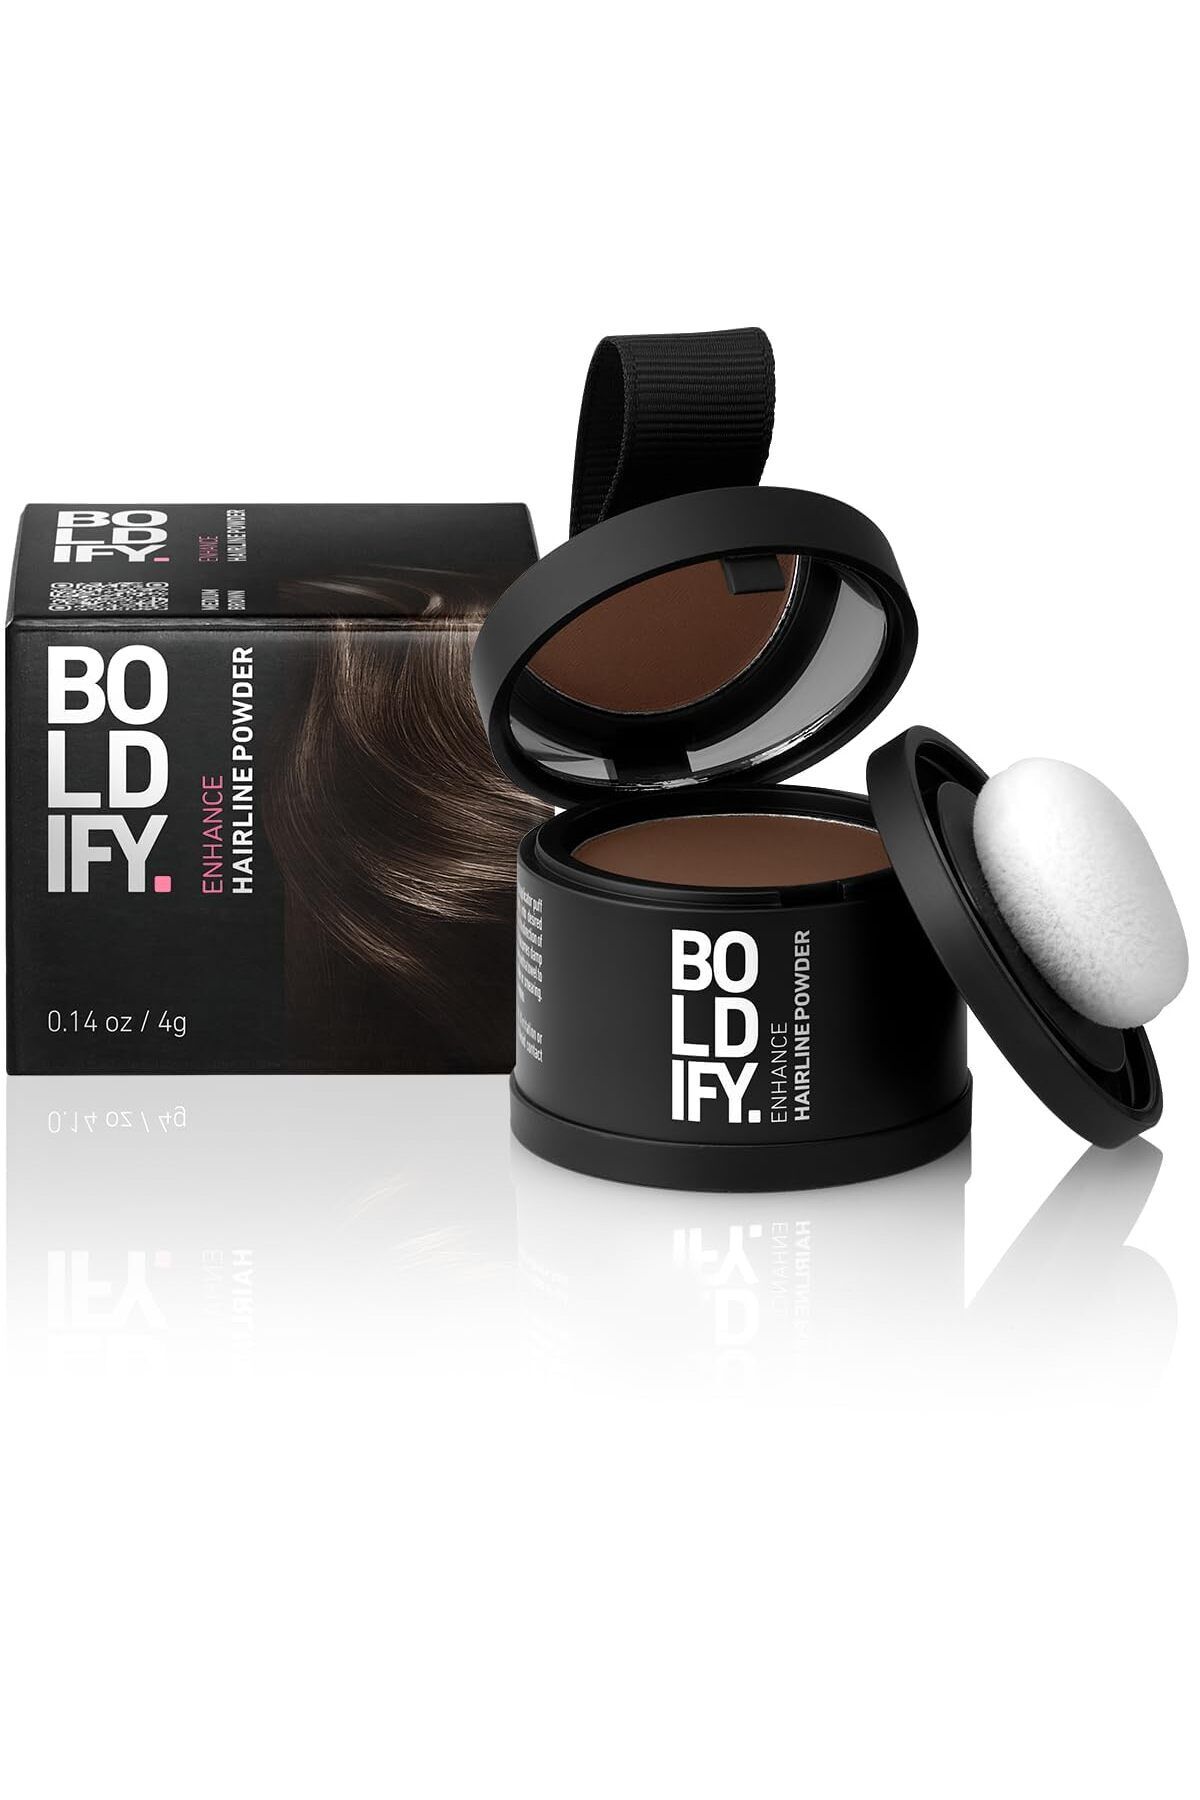 Boldify Saç Tozu Orta Kahve, Dolgunlaştırıcı Topik Tozu, Saç Dökülmesini Gizler & 48 saat etkili